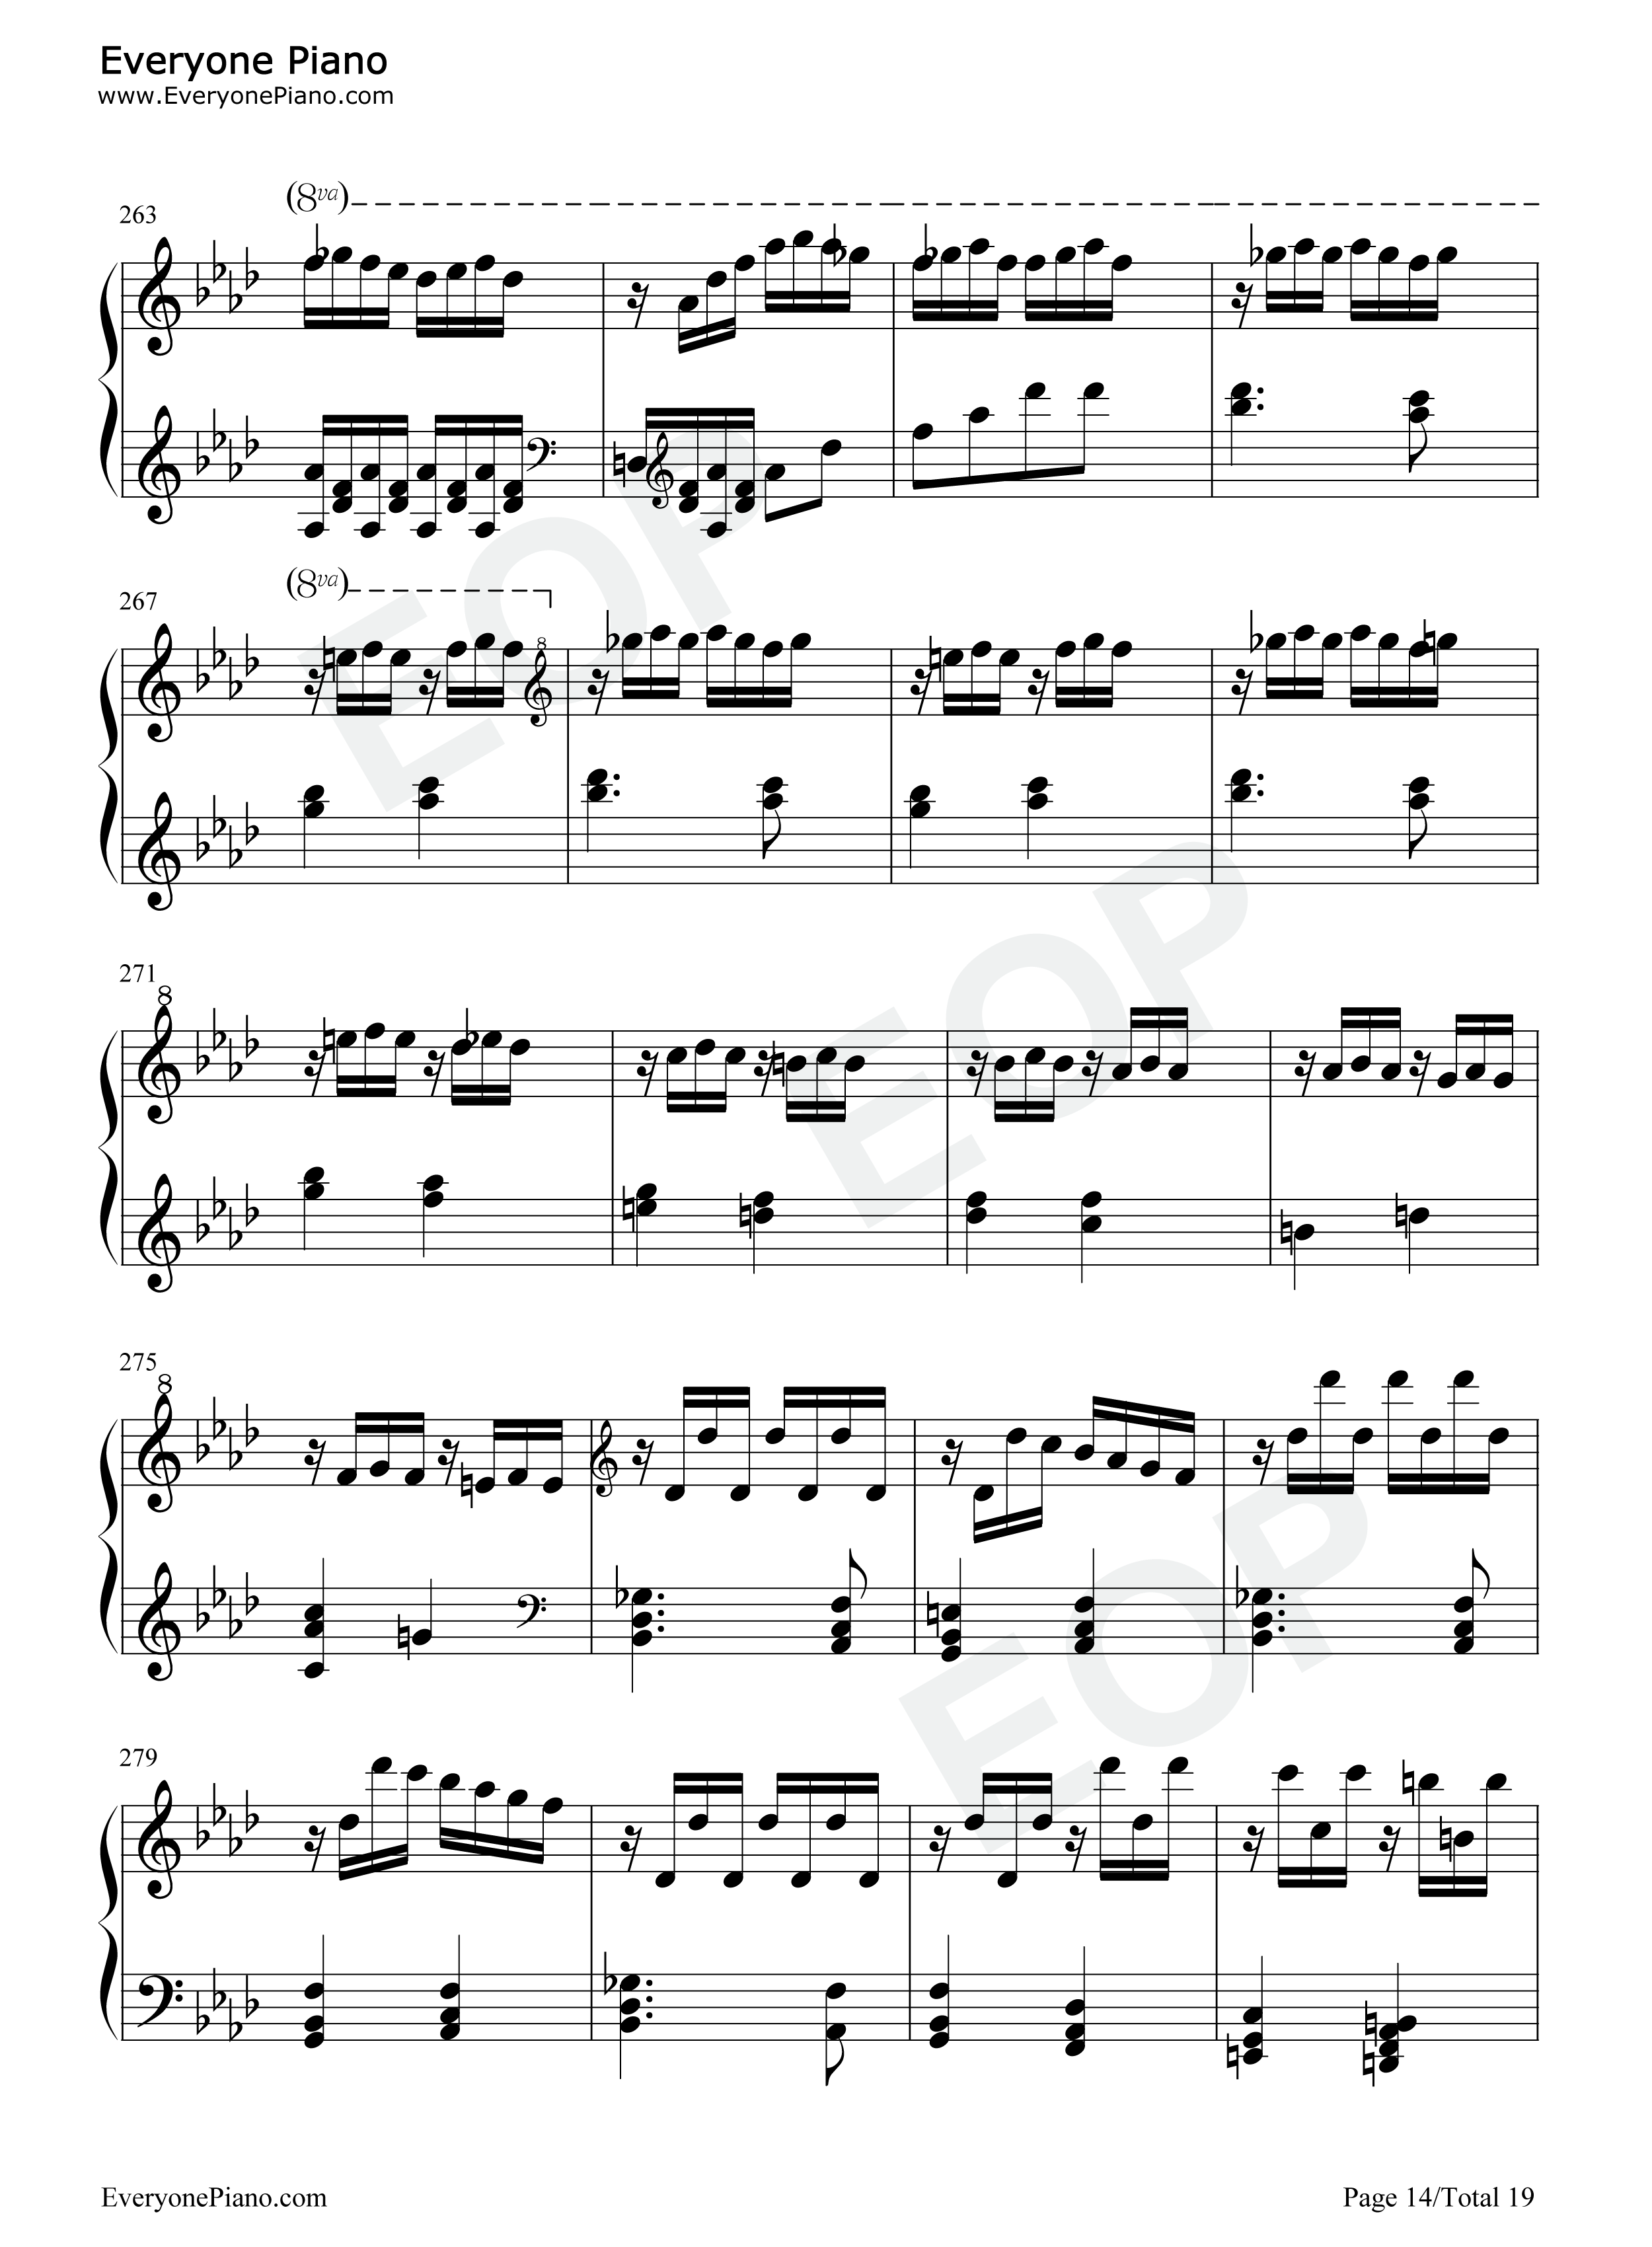 热情奏鸣曲第3乐章-第23钢琴奏鸣曲-贝多芬五线谱预览14